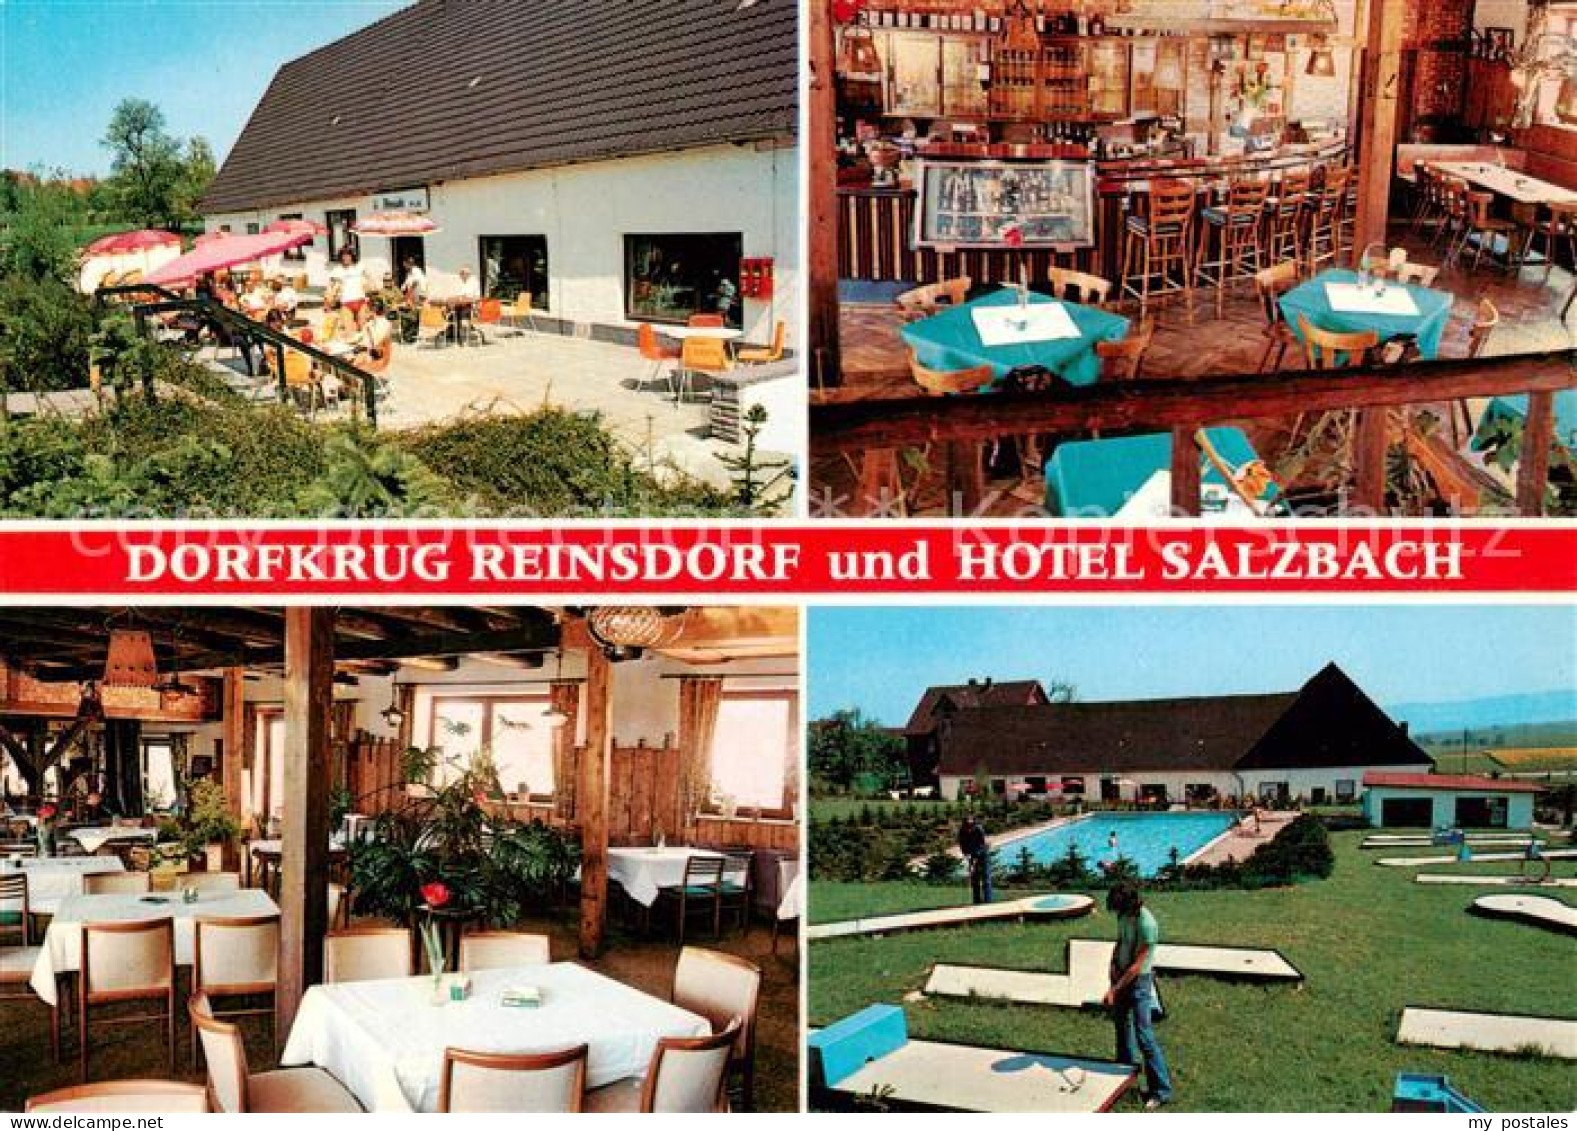 73862319 Reinsdorf Apelern Restaurant Dorfkrug Hotel Salzbach Minigolf Swimming  - Other & Unclassified